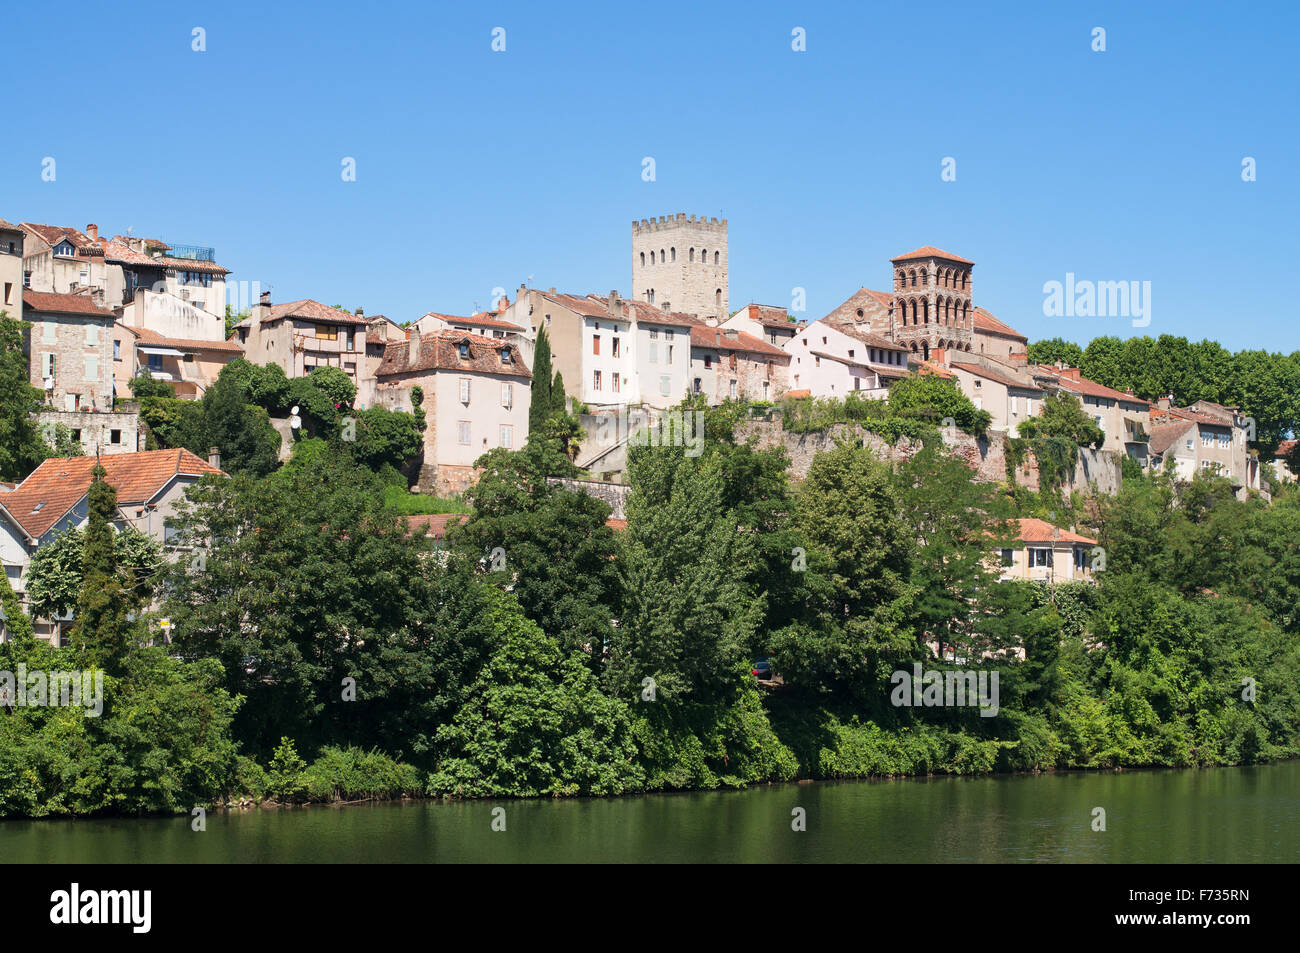 La vieille ville de Cahors vue de l'autre côté de la rivière Lot, Midi-Pyrénées, France, Europe Banque D'Images